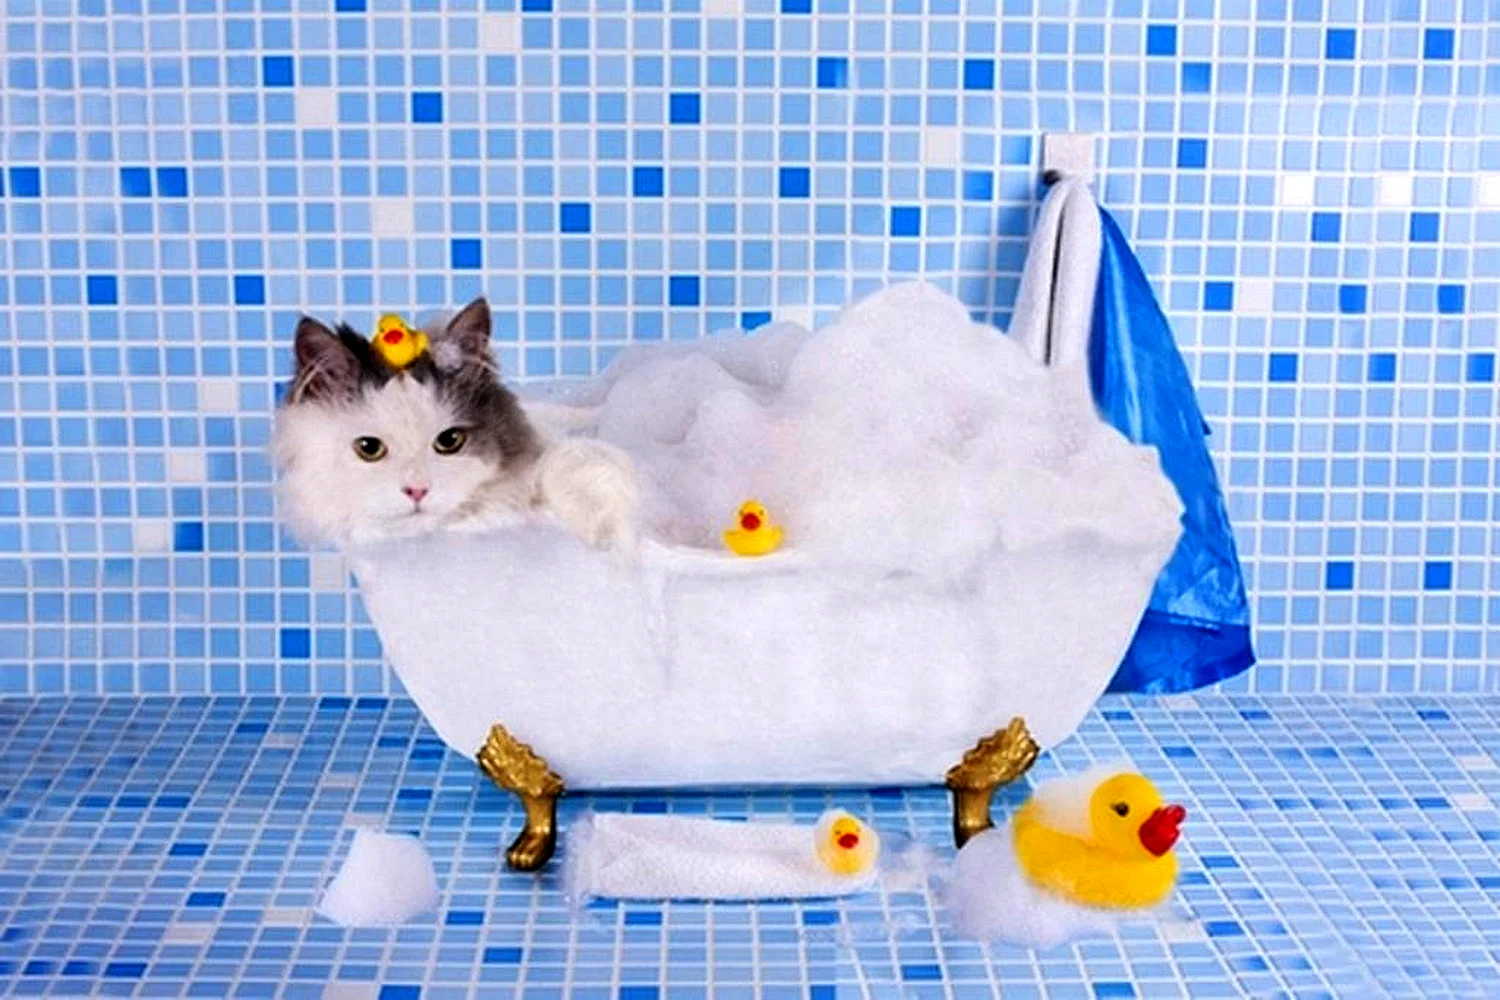 Покажи картинку ванной. Котик в ванной. Кошка в ванной. Купание кота. Котенок купается в ванне.